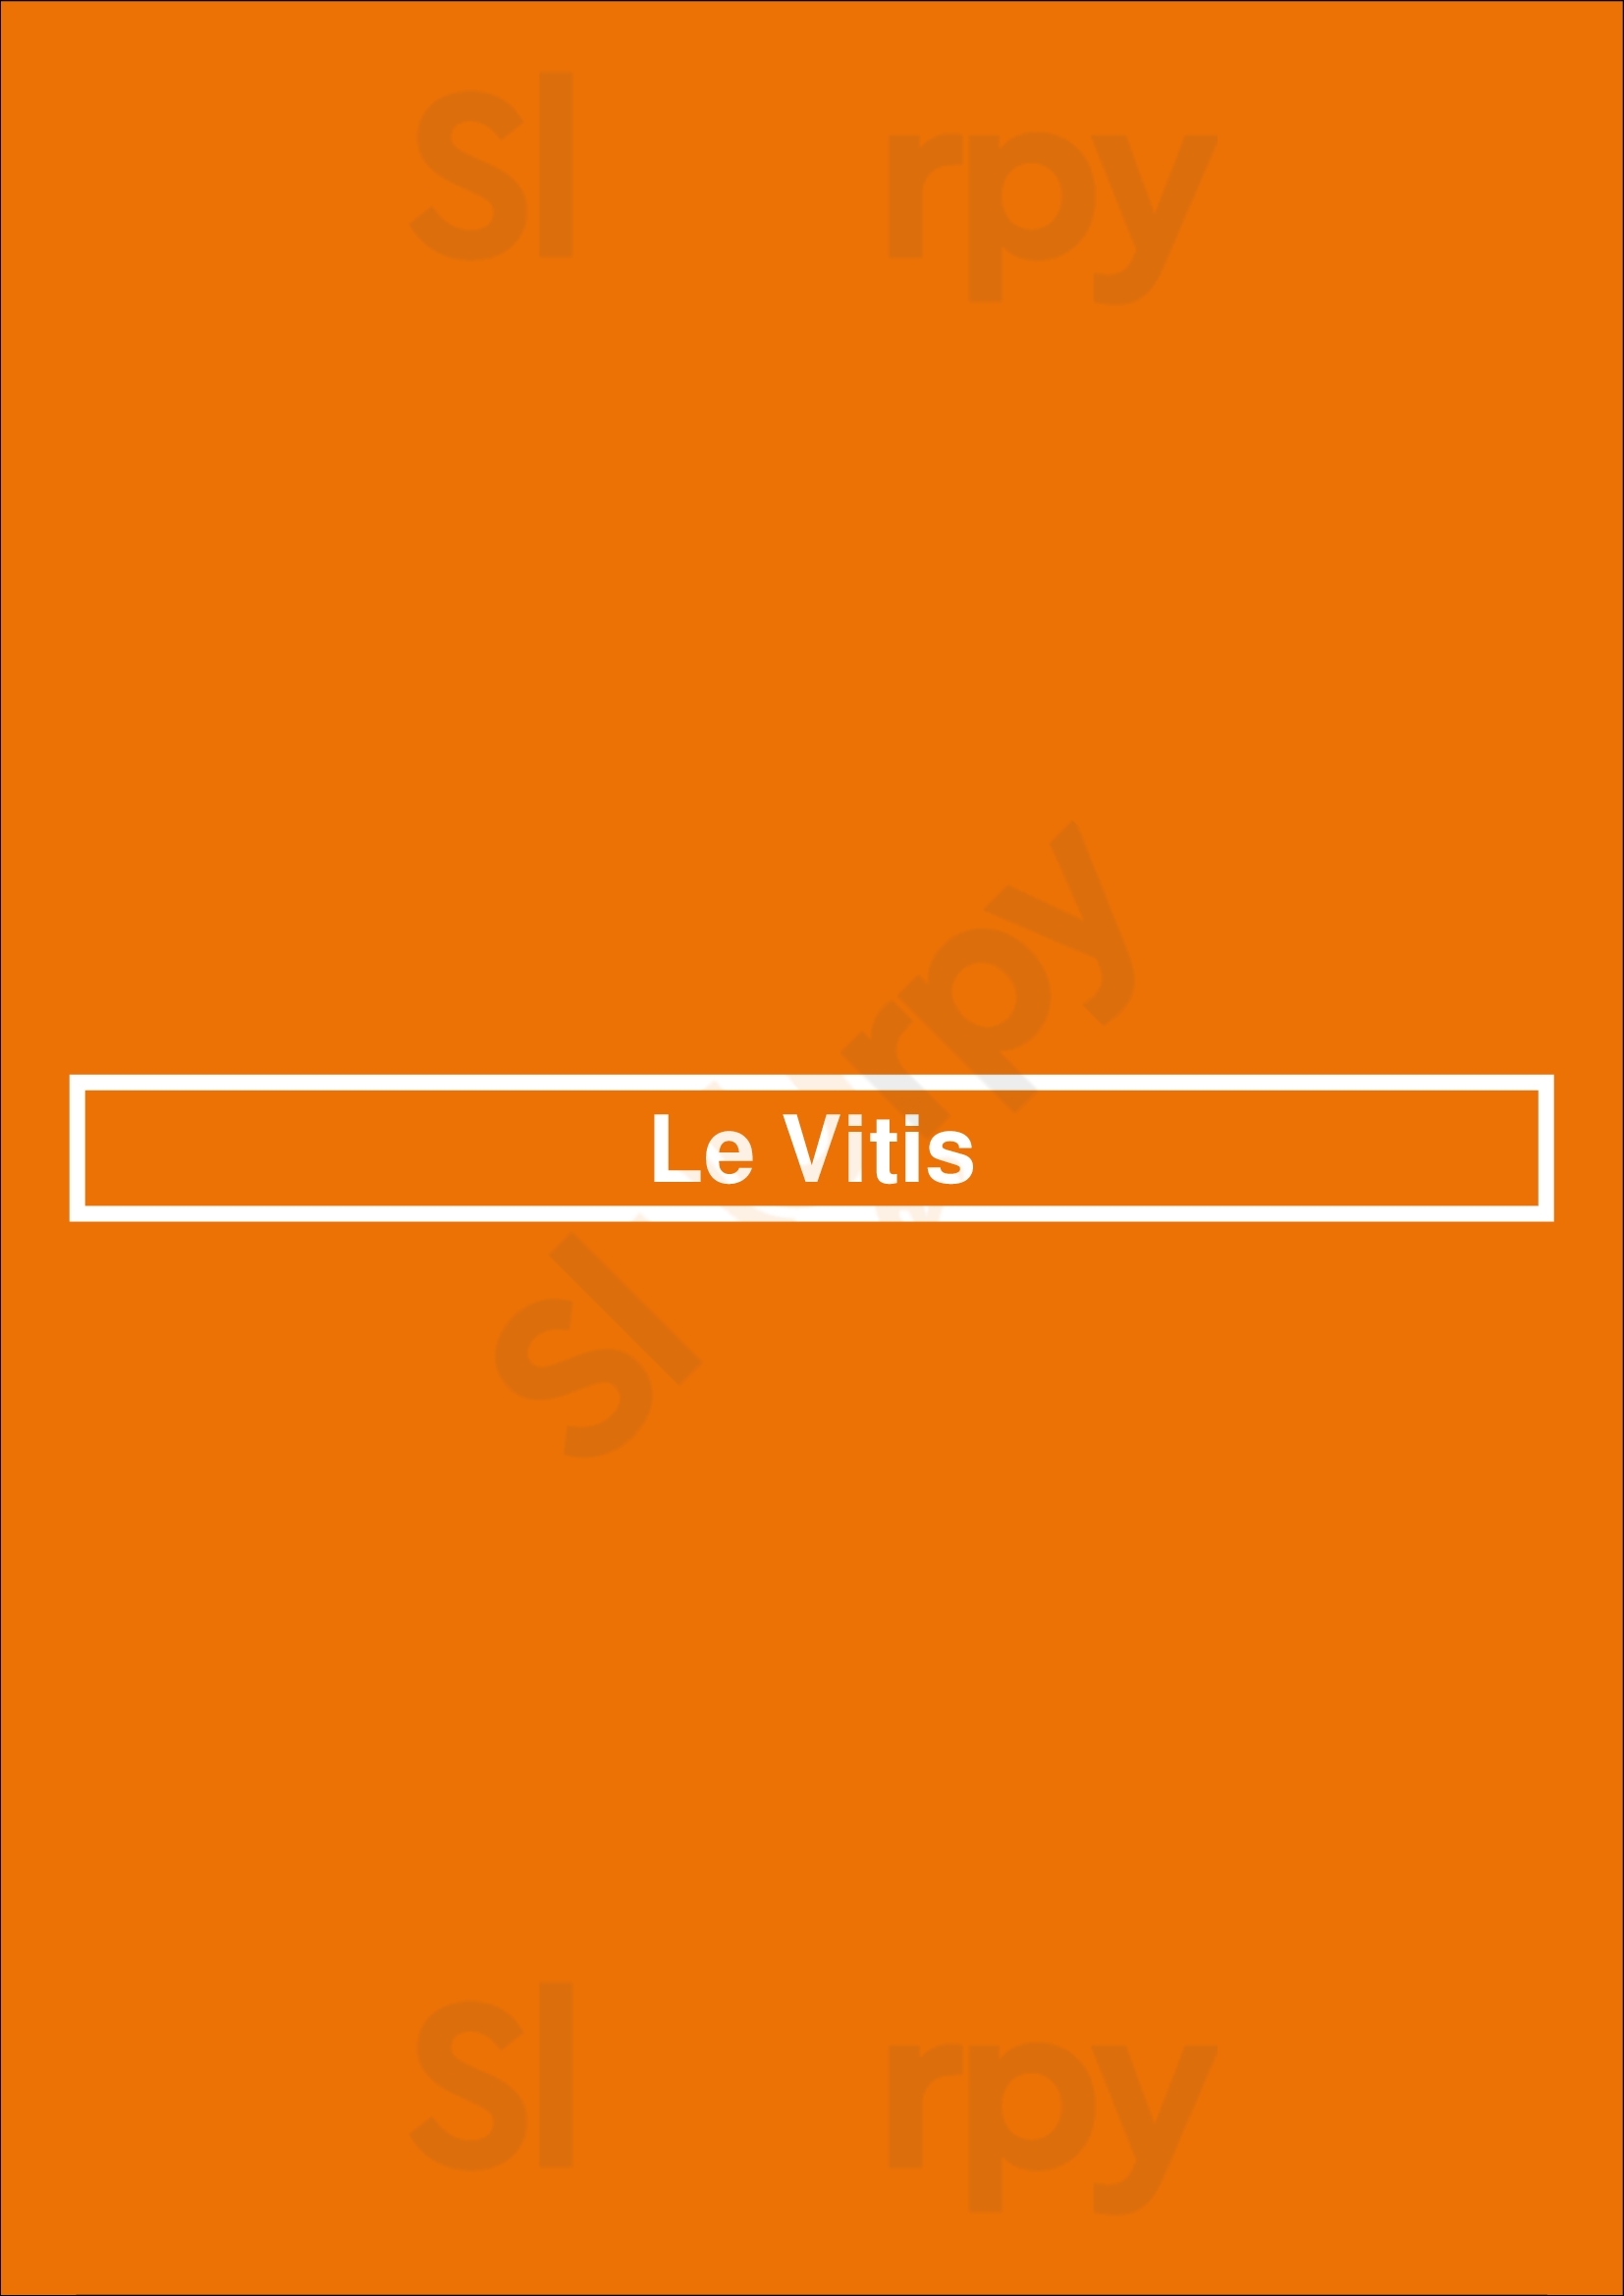 Le Vitis Paris Menu - 1